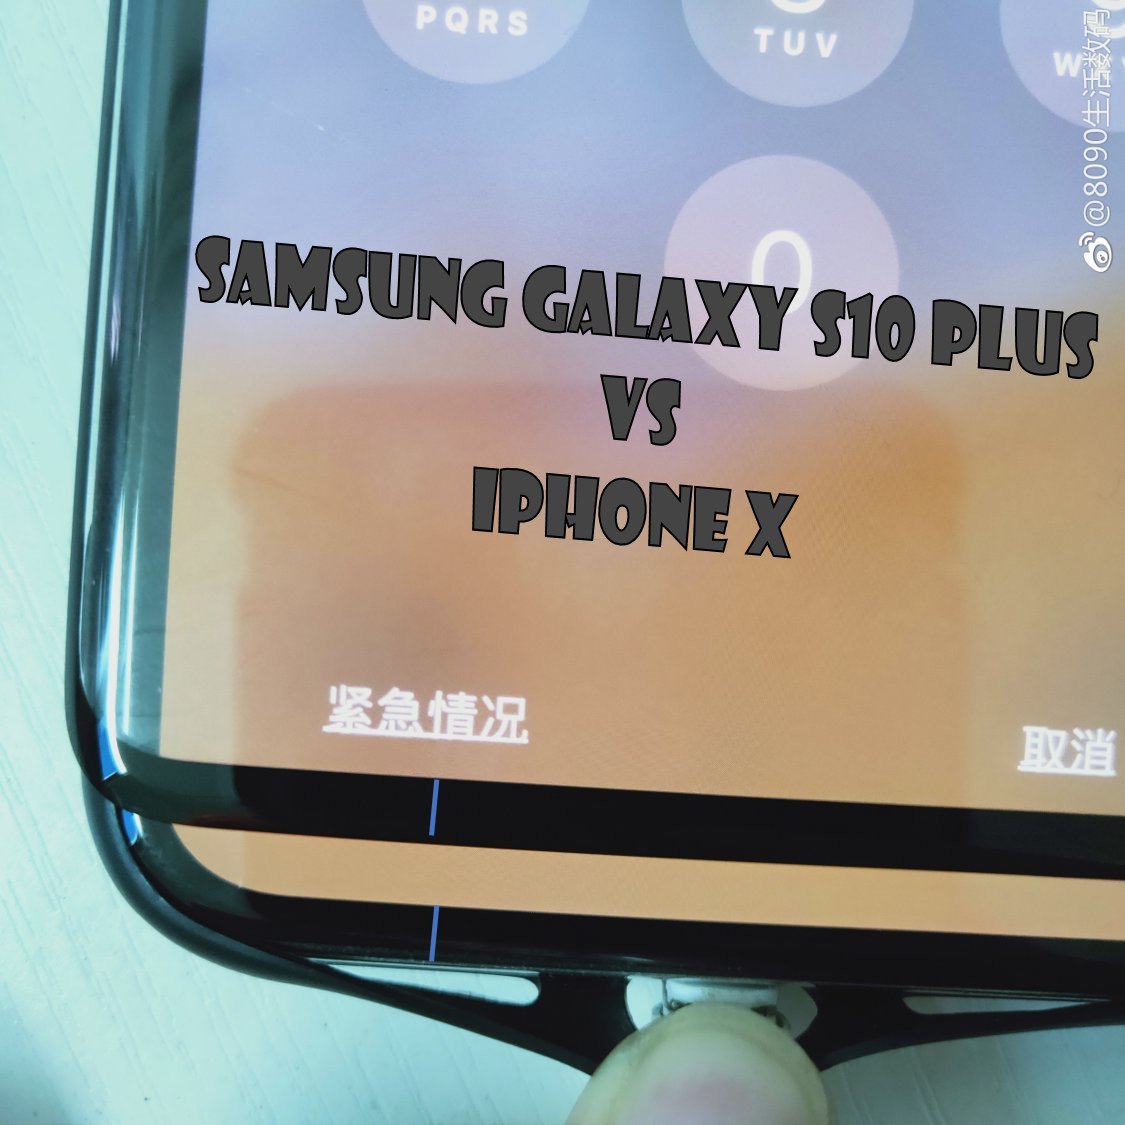 A képernyőborító szivárgása megerősíti, hogy a Samsung Galaxy S10 Plus kicsi, aranyos álla van